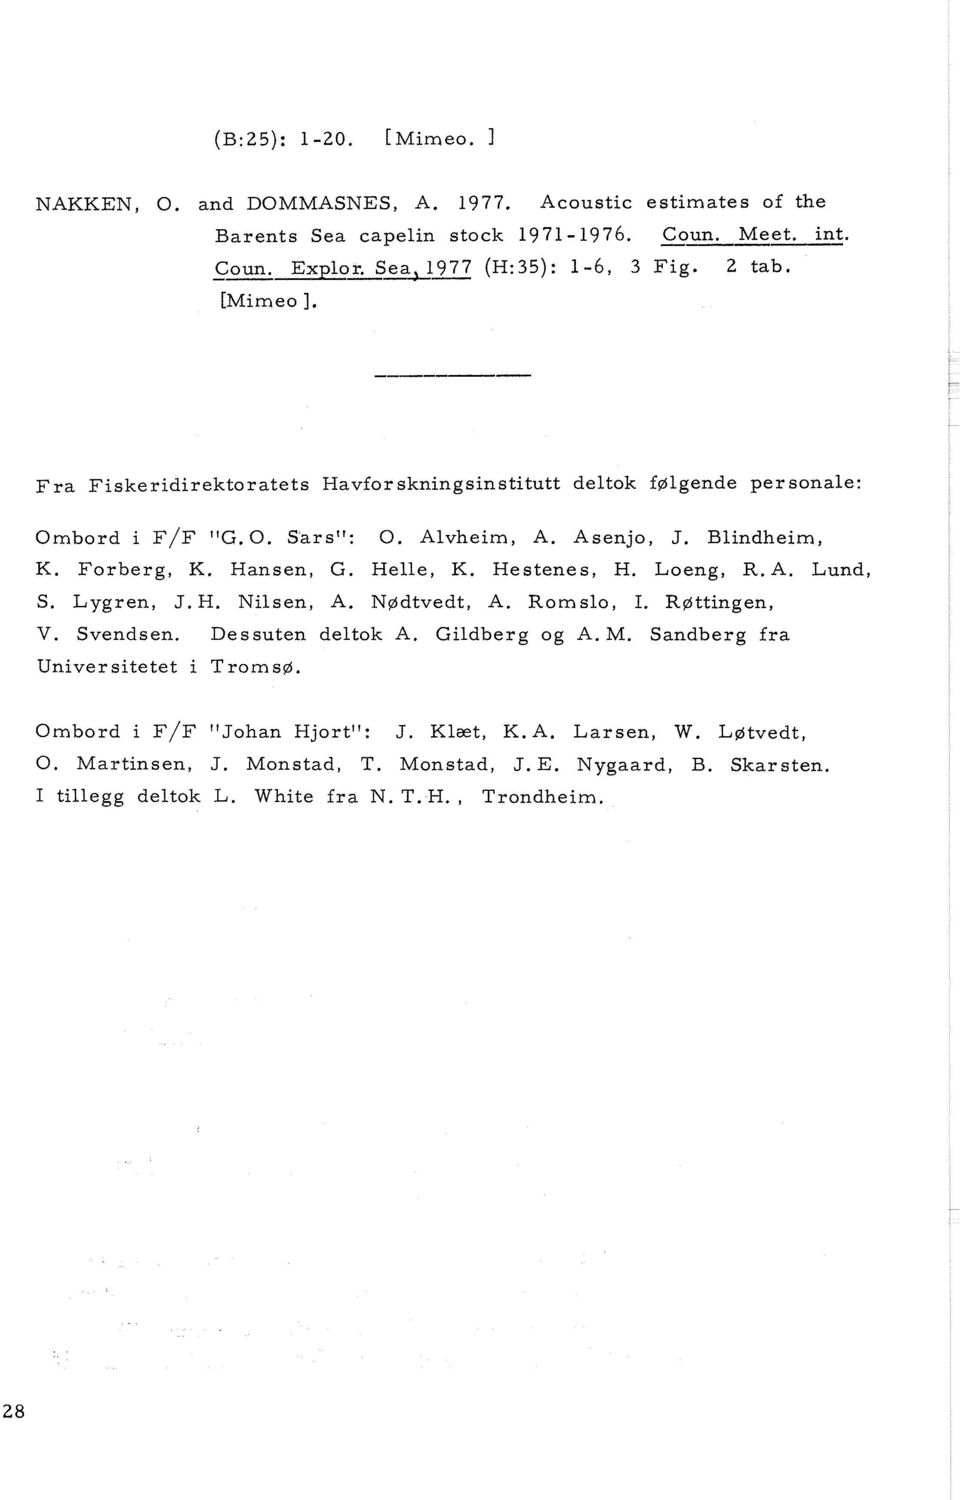 Hestenes, H. Loeng, R.A. Lund, S. Lygren, J.H. Nilsen, A. N~dtvedt, A. Romslo, I. R~ttingen, V. Svendsen. Dessuten deltok A. Gildberg og A. M.